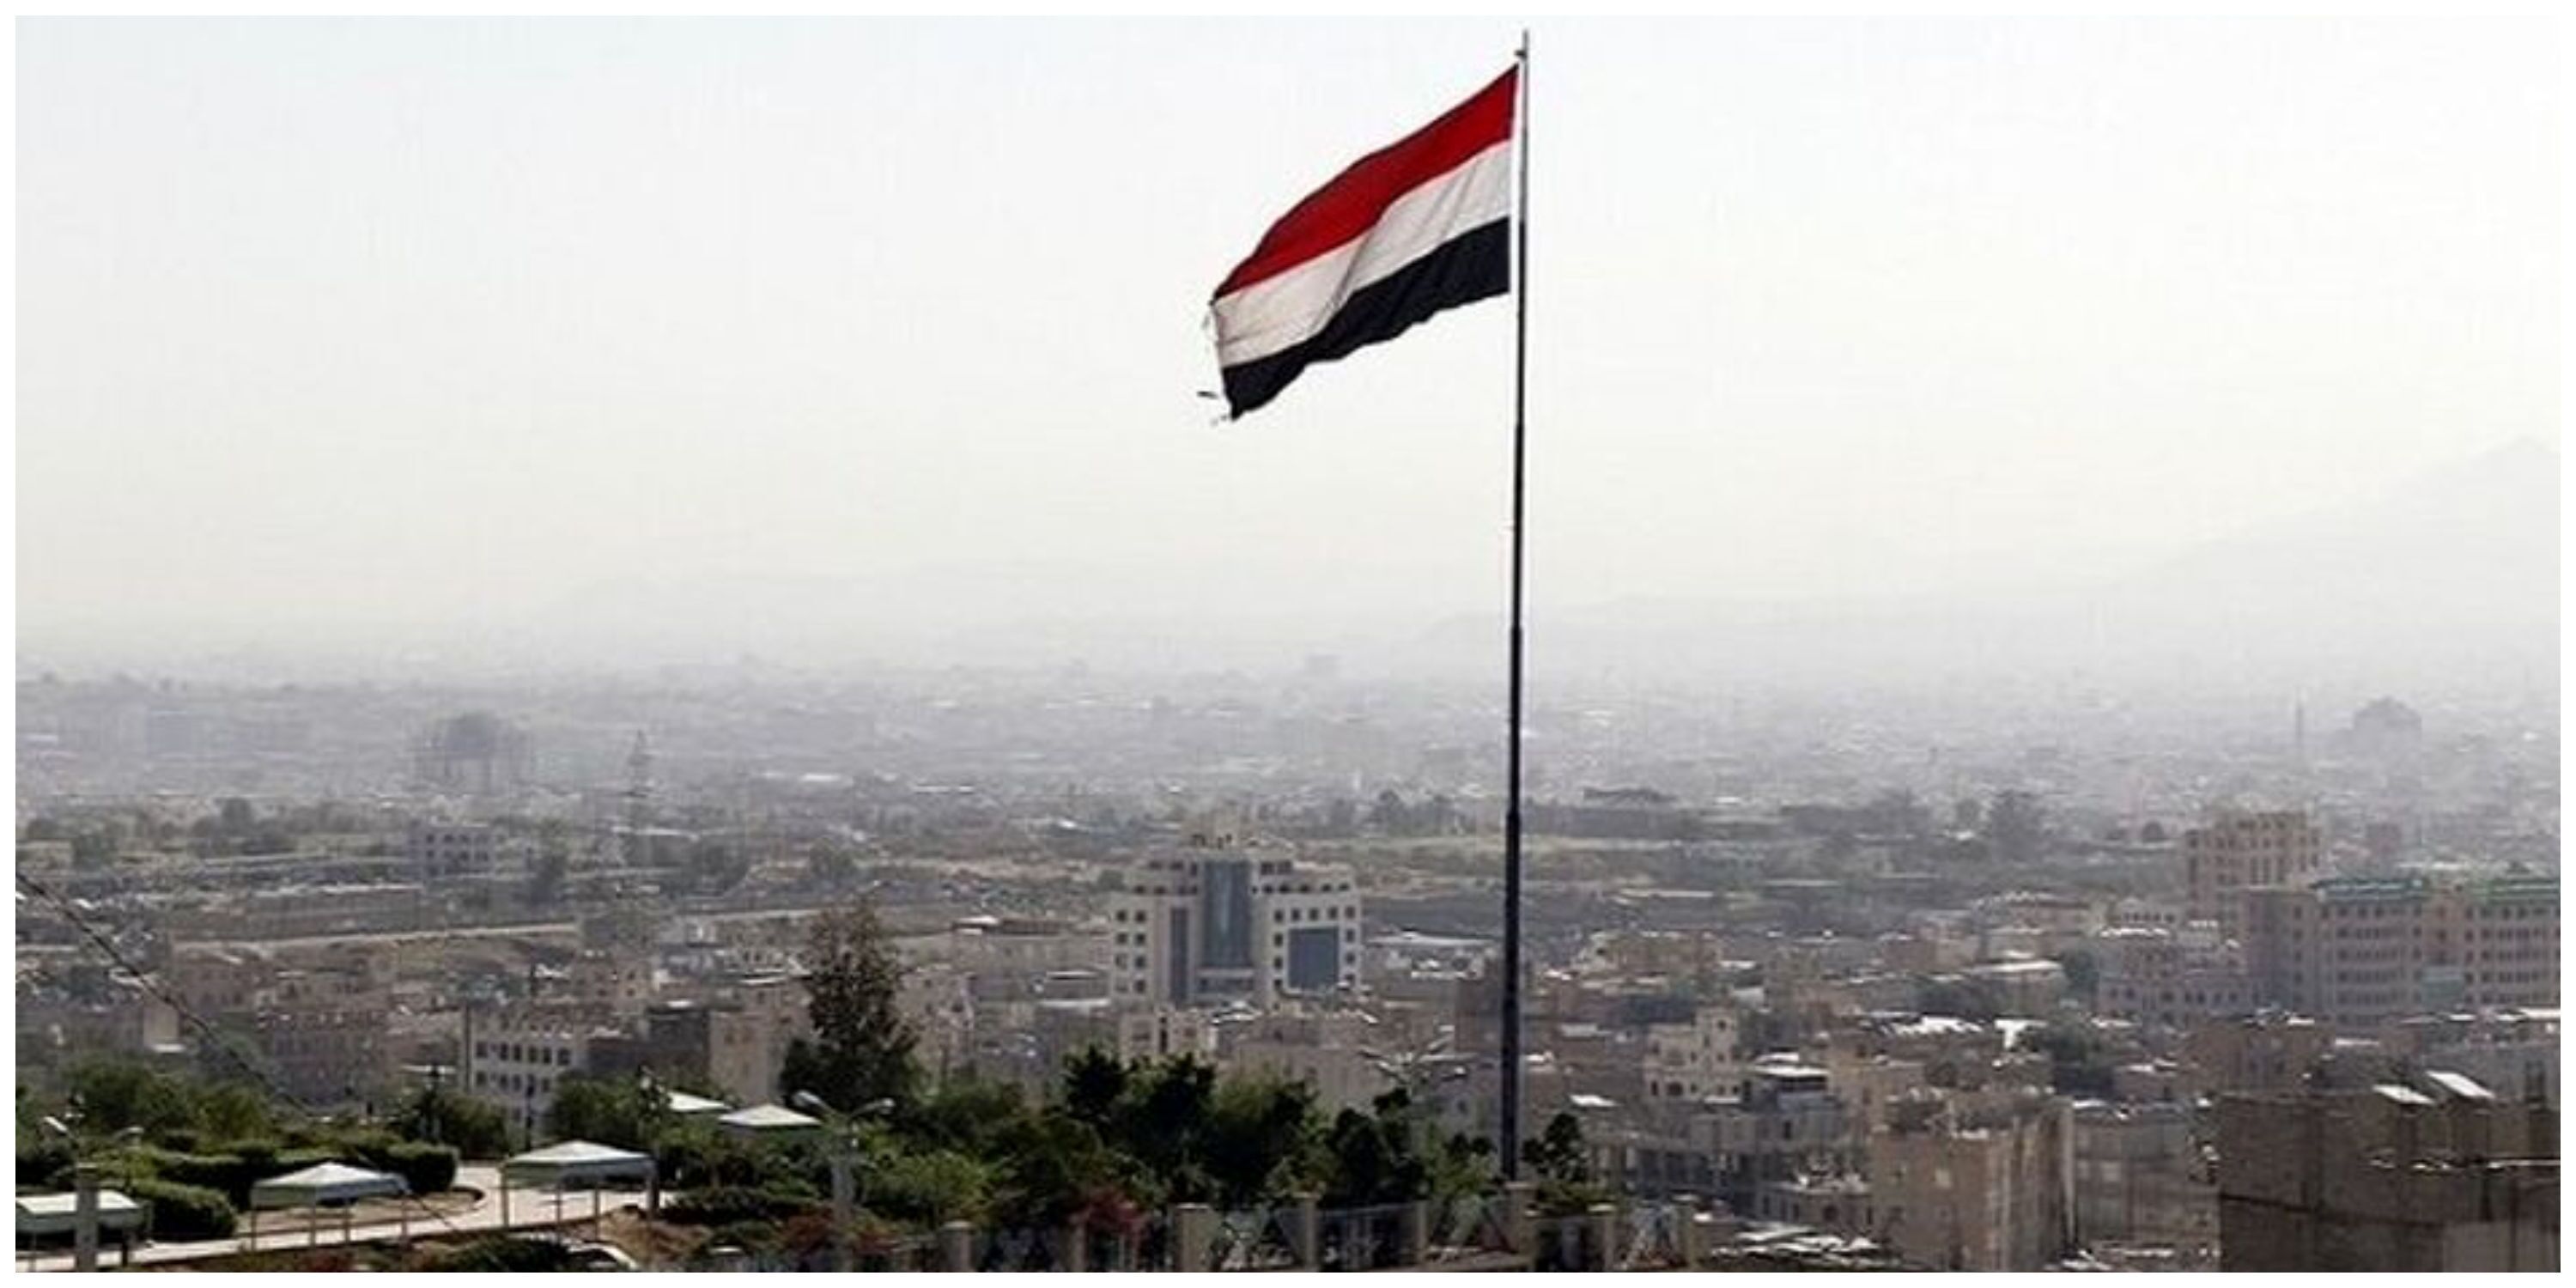 مردم یمن برای جنگ مستقیم با رژیم صهیونیستی اعلام آمادگی کردند